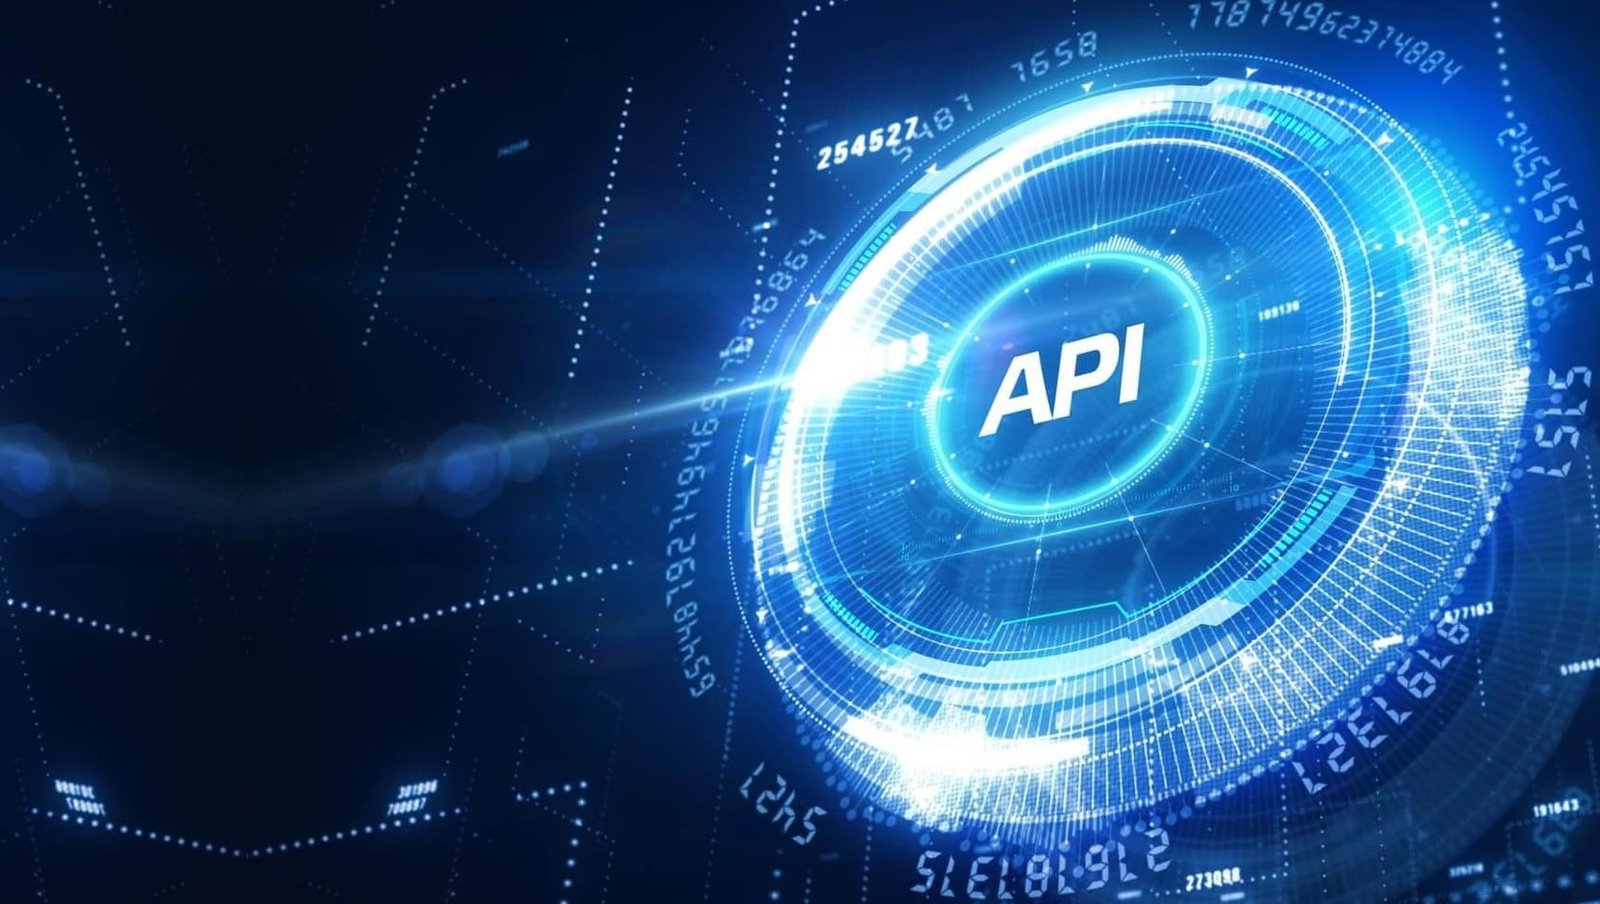 API security moves mainstream